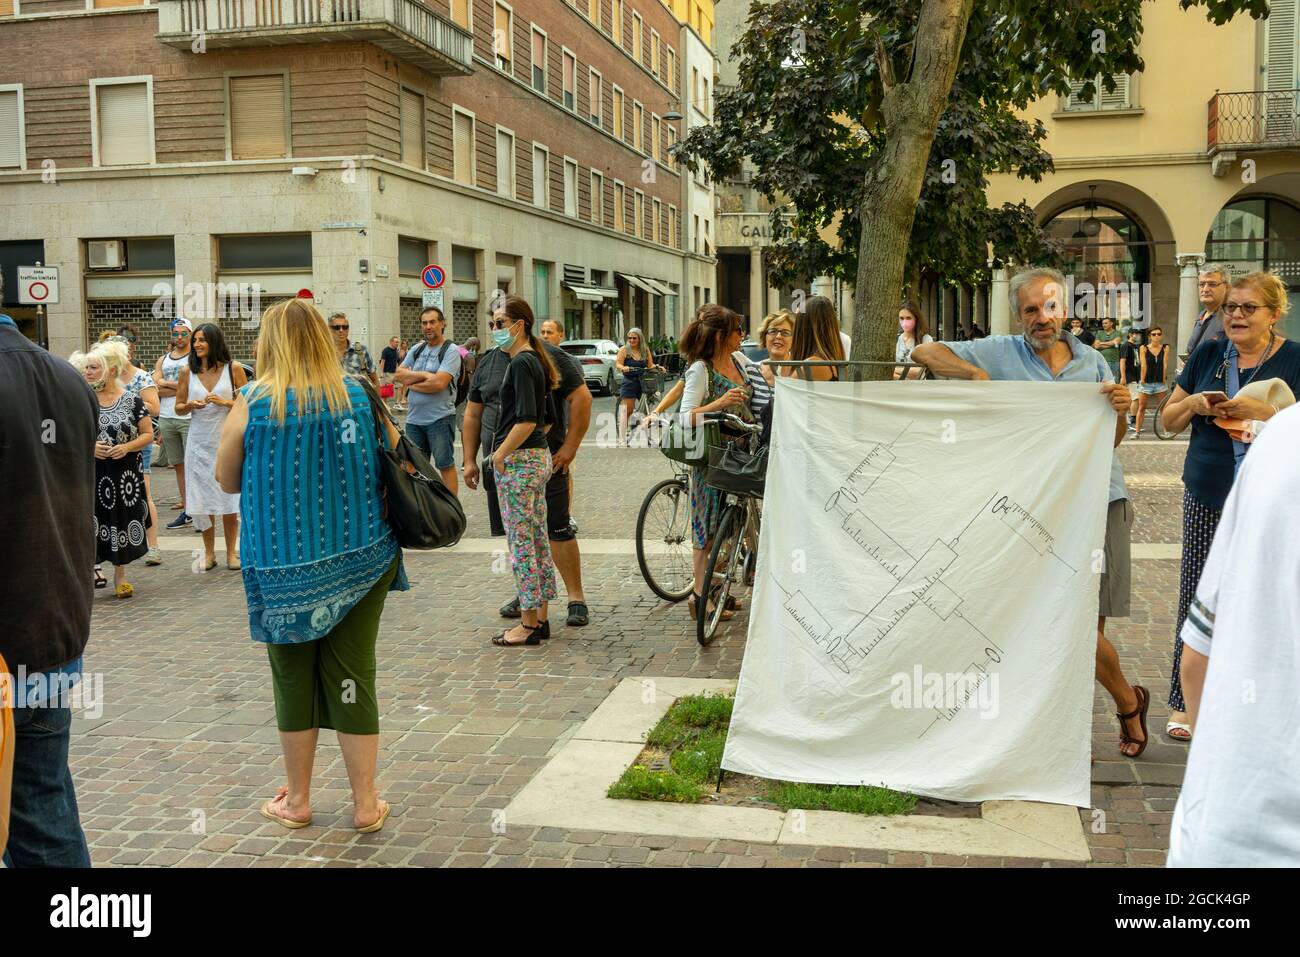 CREMON, ITALIE - 24 juillet 2021 : une foule de personnes protestant contre le vaccin COVID-19 à Cremona, Italie Banque D'Images